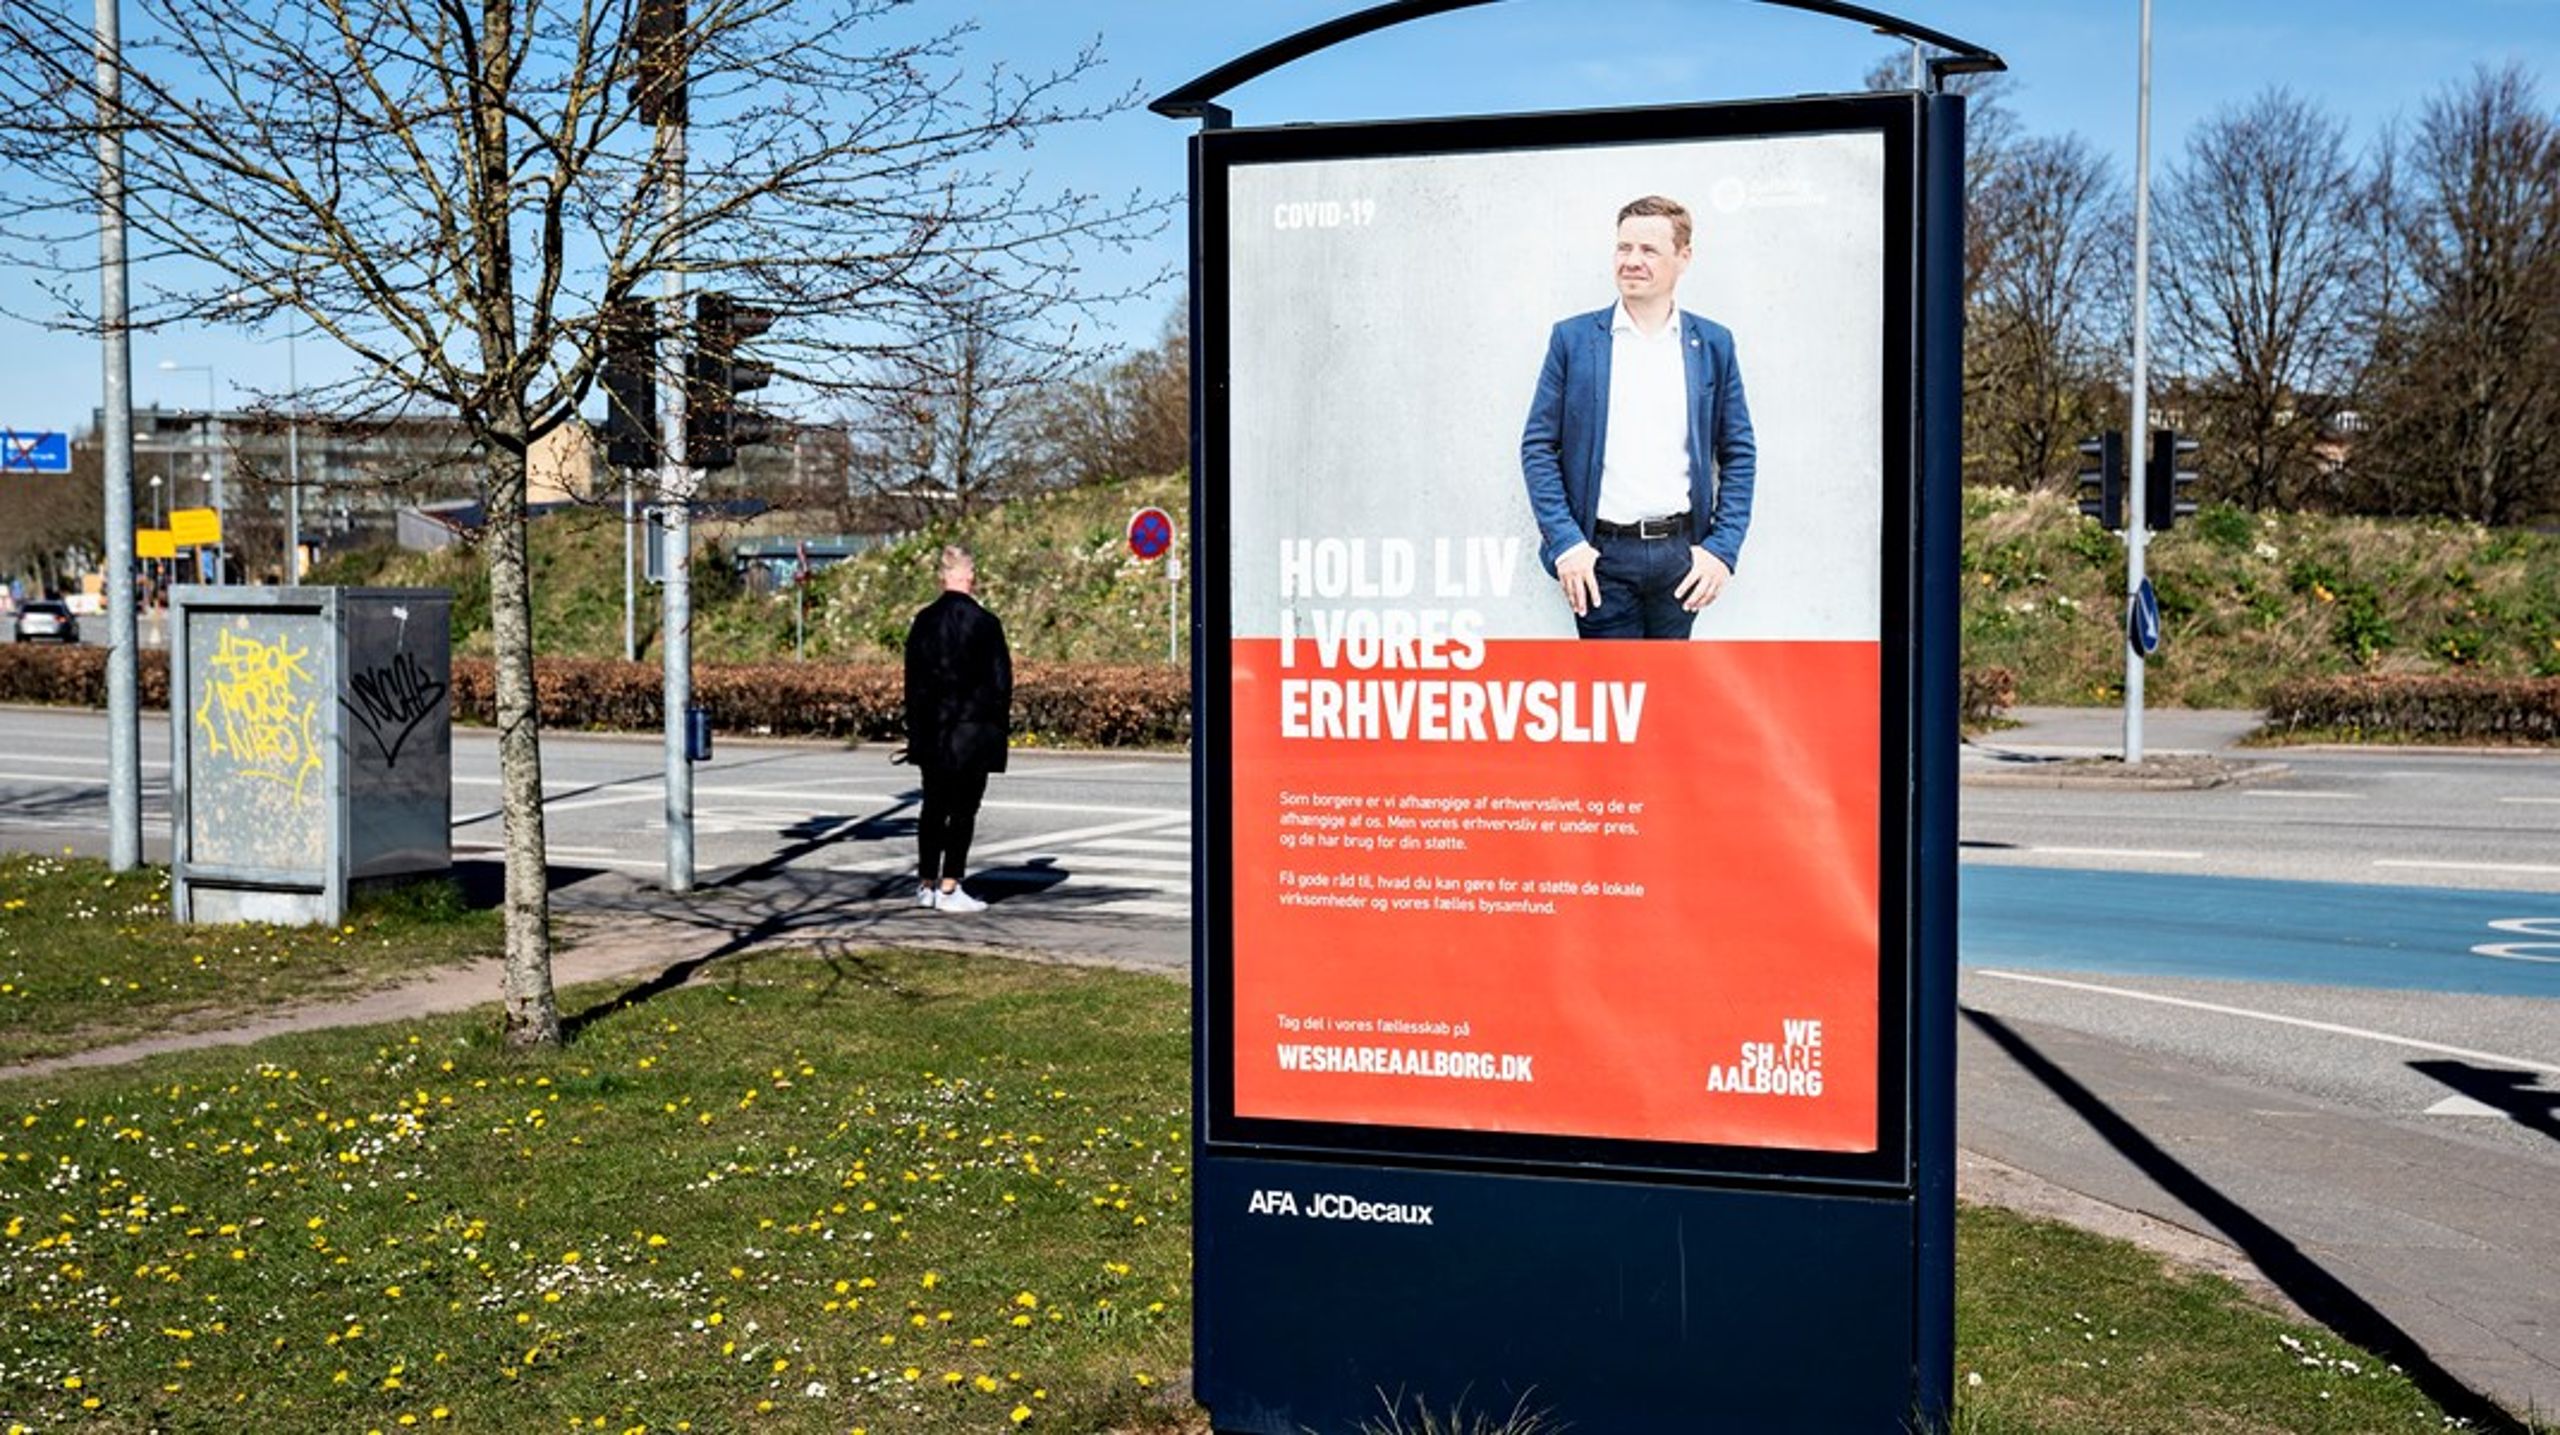 Borgmesteren i Aalborg optrådte i 2020 i kommunalt betalte outdoor-reklamer overalt i bybilledet i Aalborg, skriver. Eksponeringen af ledende politikere i kommunerne antager nogle gange nærmest karakter af egentlig propaganda og kampagne, skriver Roger Buch. <br>